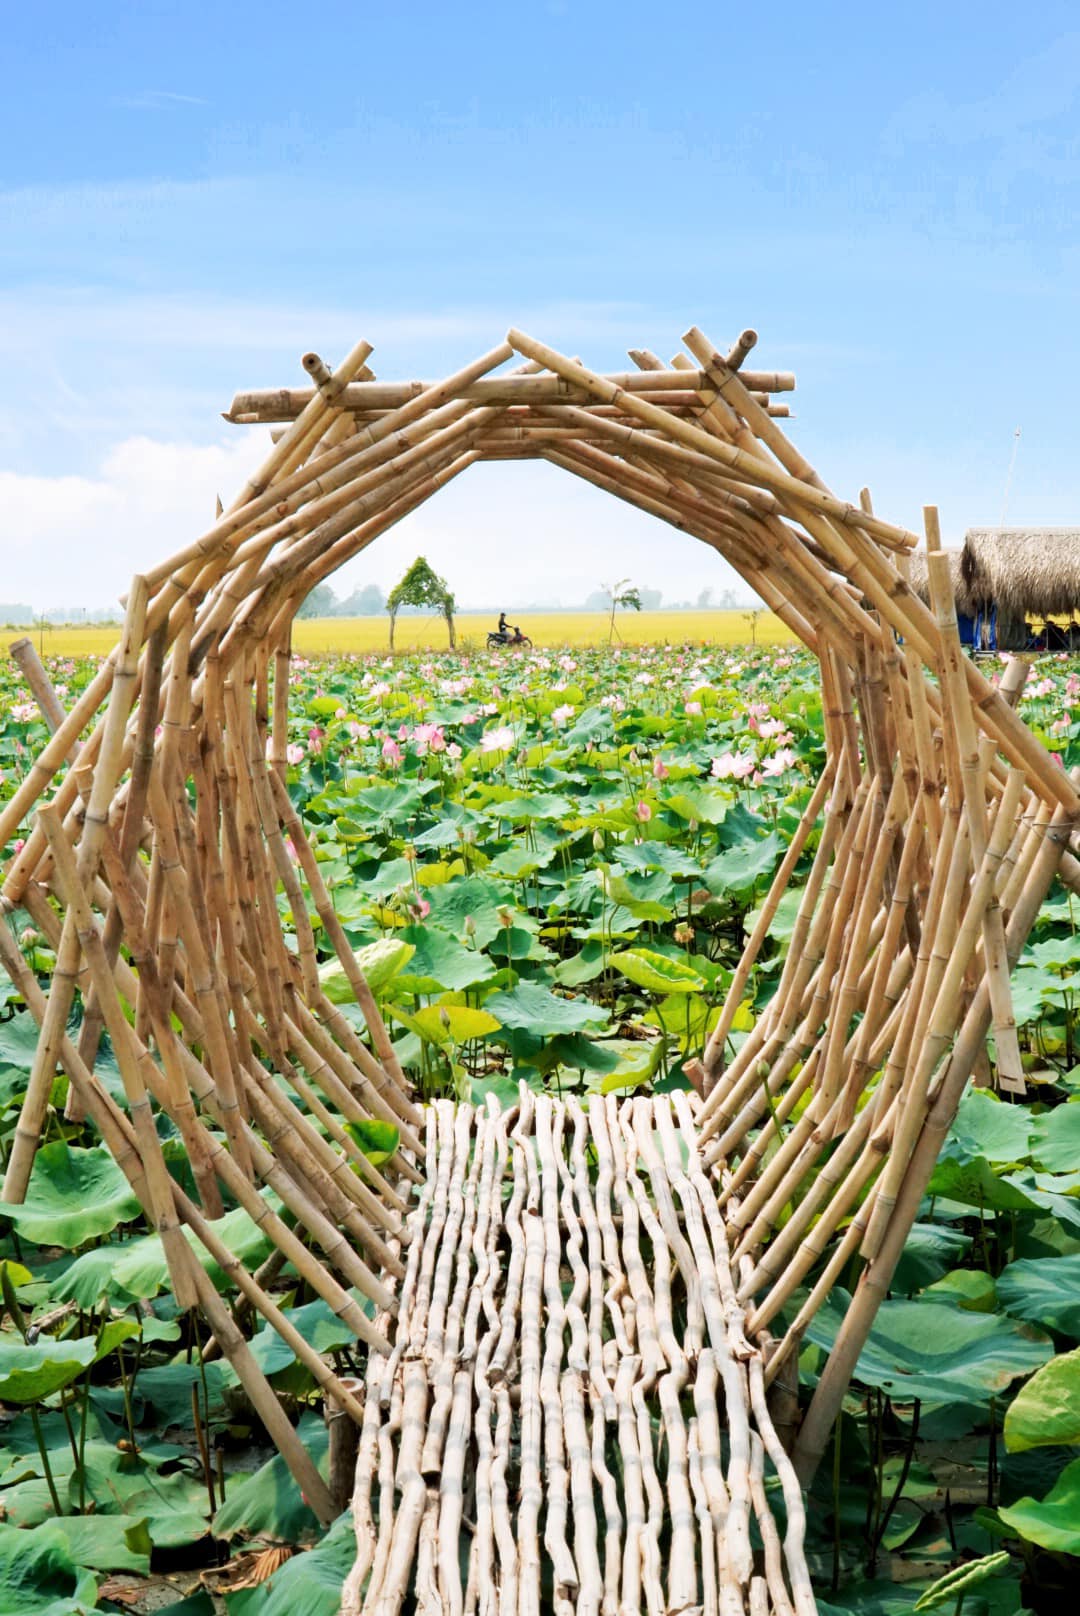 Cánh đồng sen là bức tranh thiên nhiên tuyệt đẹp của Việt Nam với những đóa sen trắng đang nở rực rỡ. Hãy cùng ngắm nhìn hình ảnh về cánh đồng sen và cảm nhận sắc màu thiên nhiên tuyệt vời này.